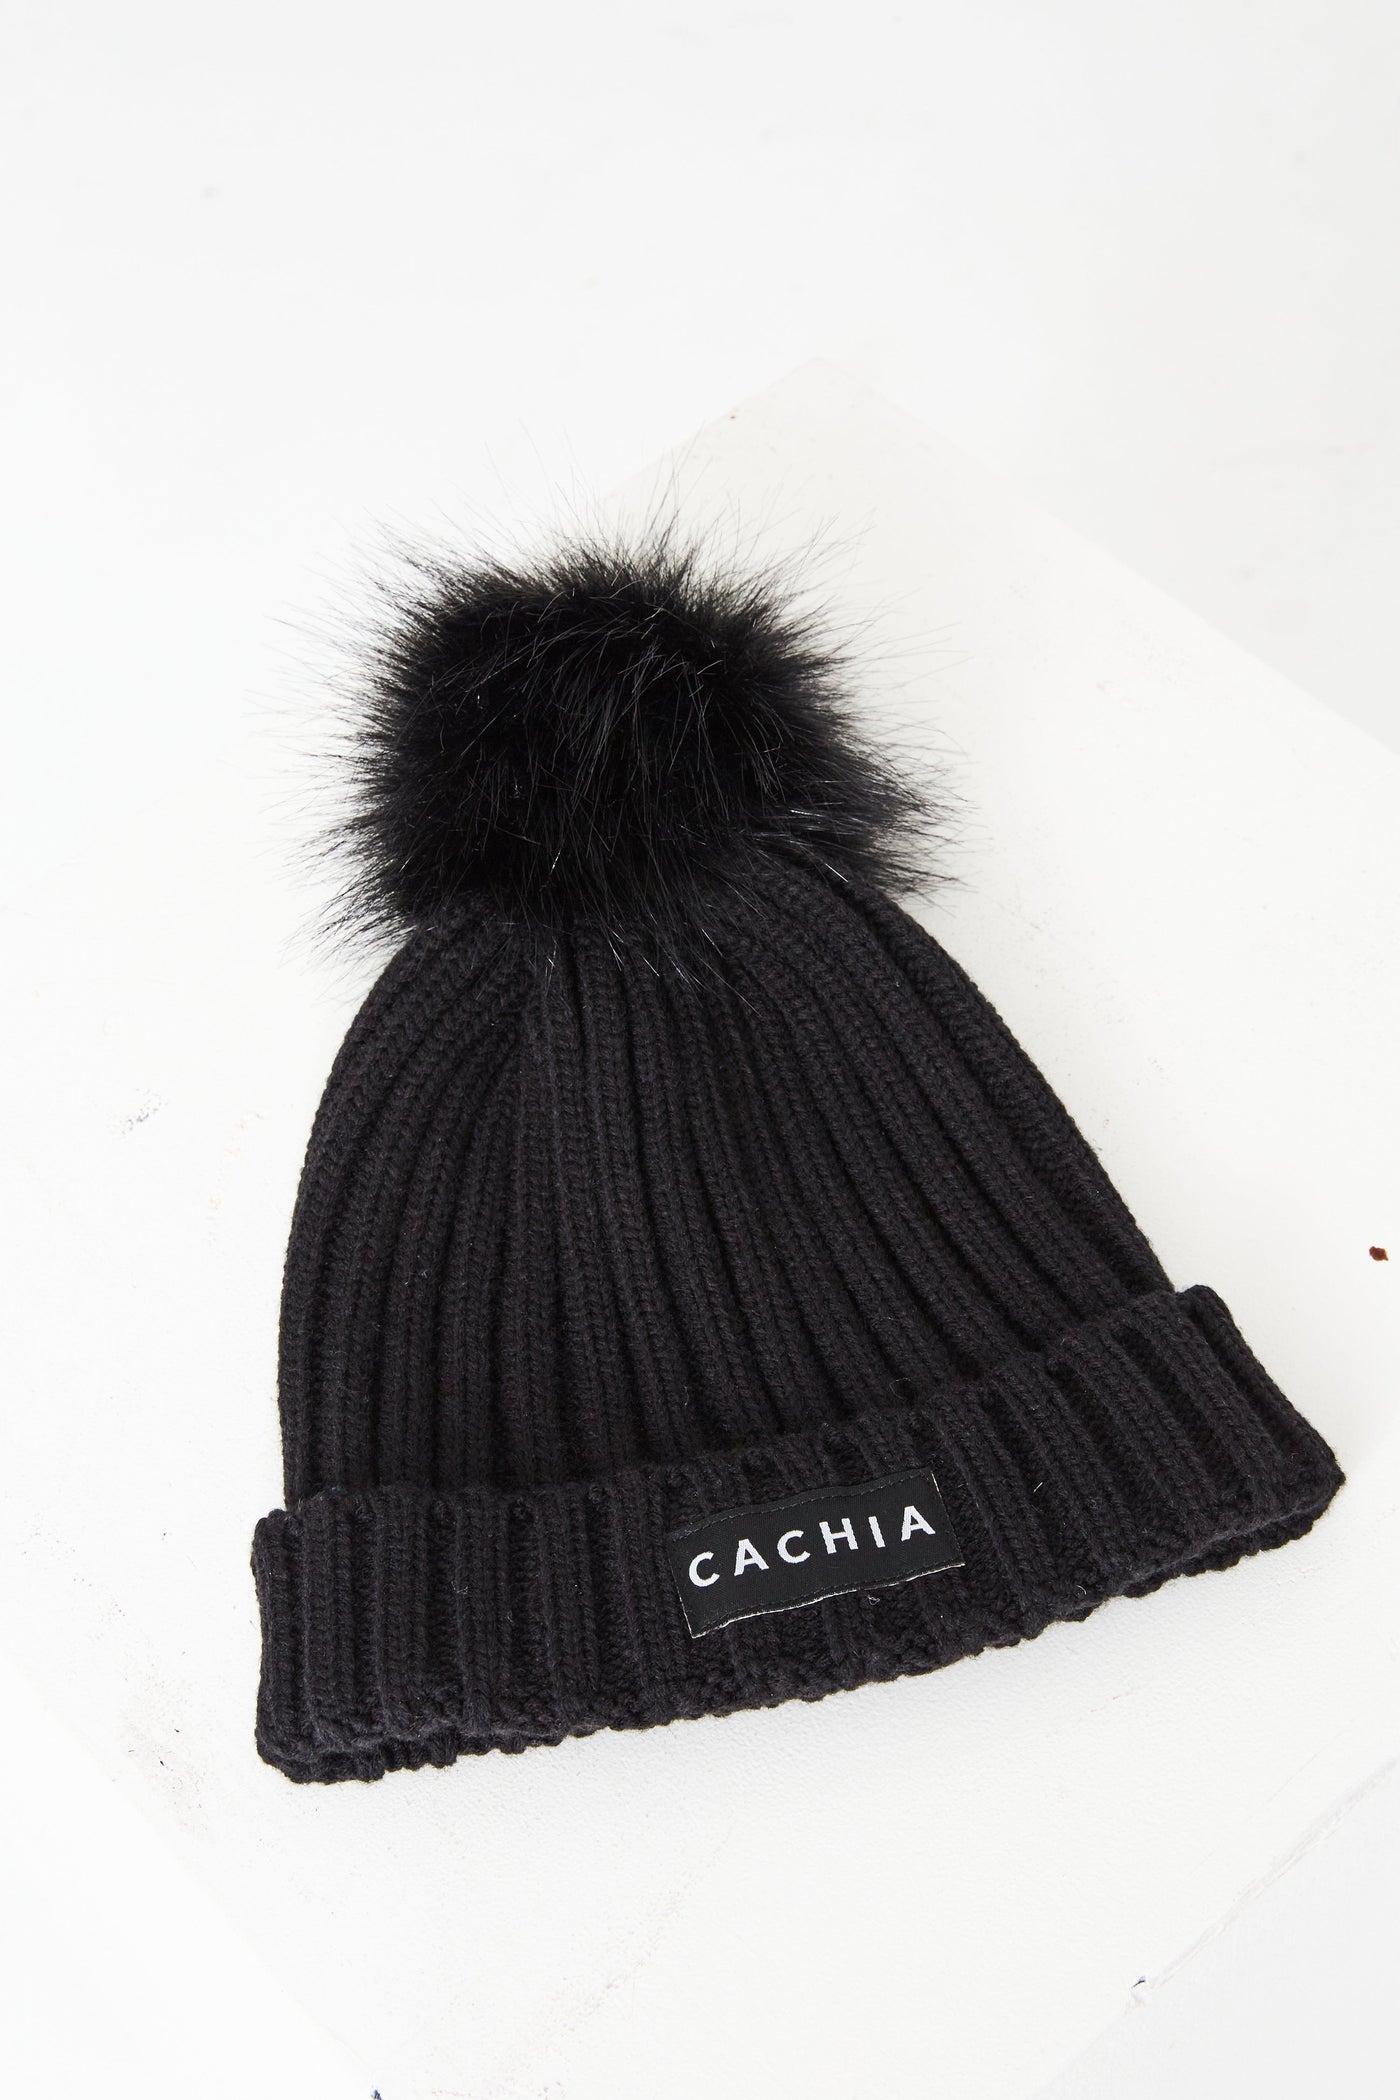 Cachia Black Beanie Hats